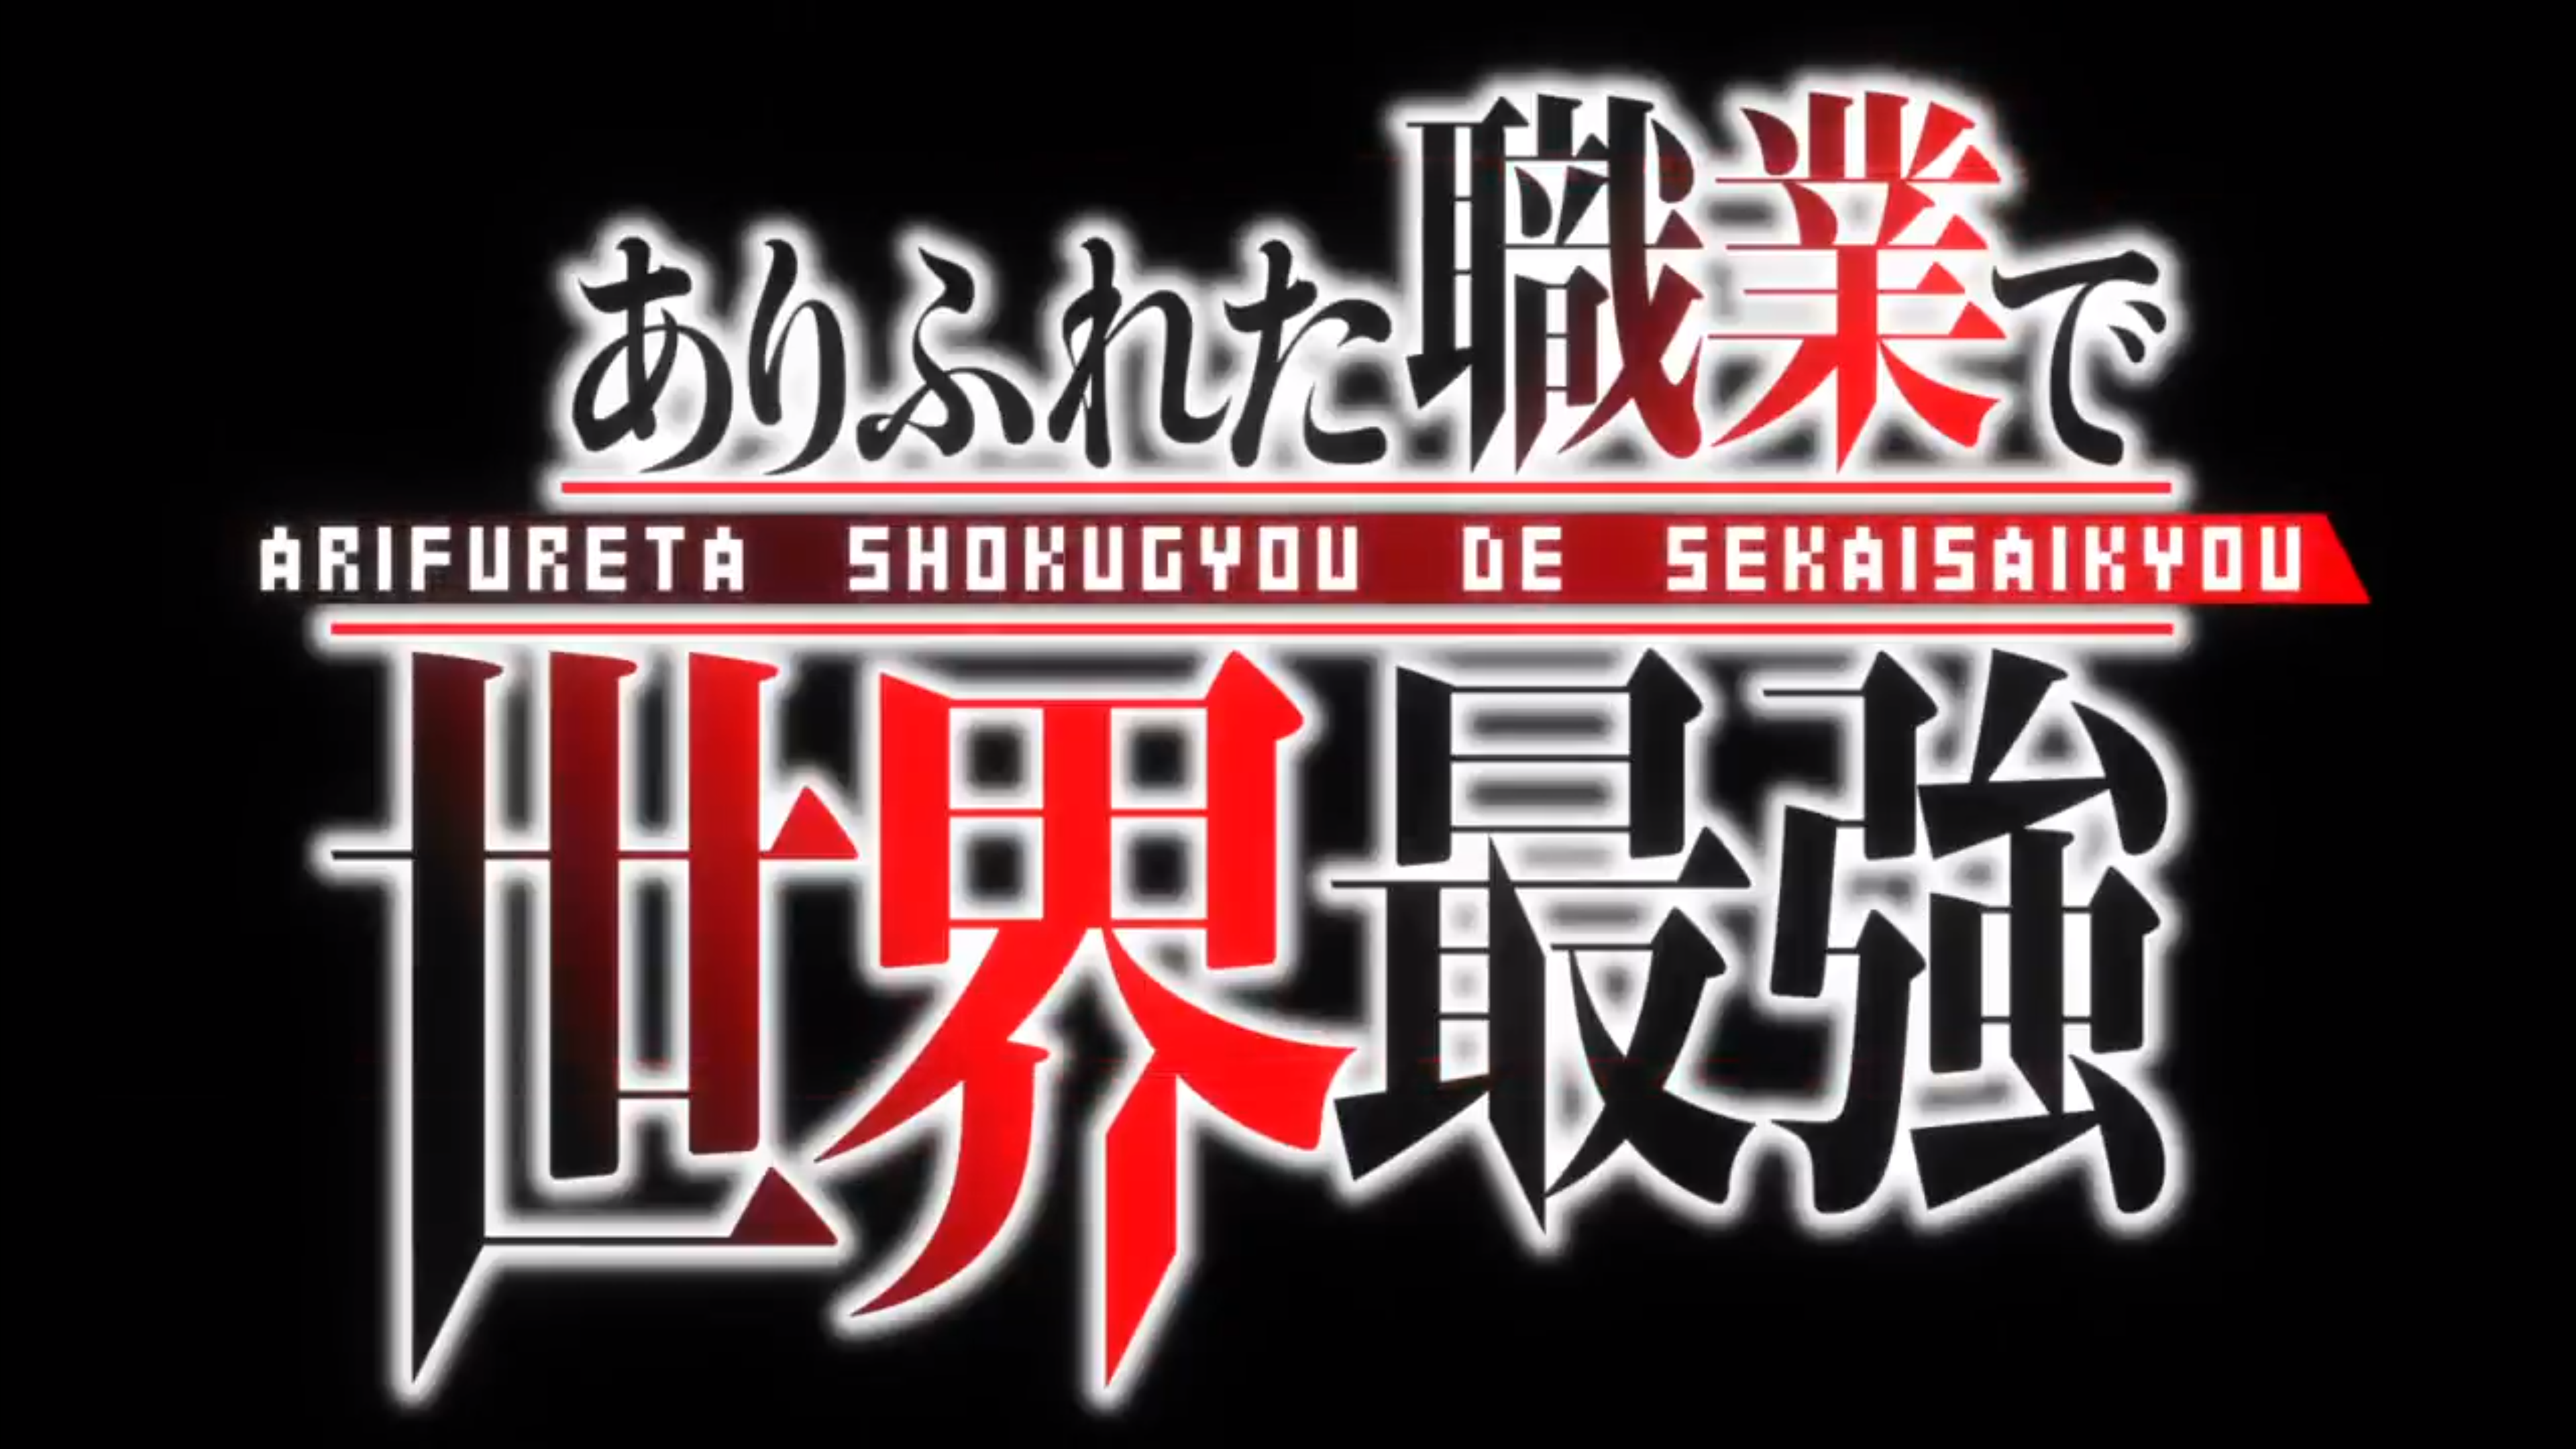 Arifureta Shokugyou de Sekai Saikyou temporada 1 - Ver todos los